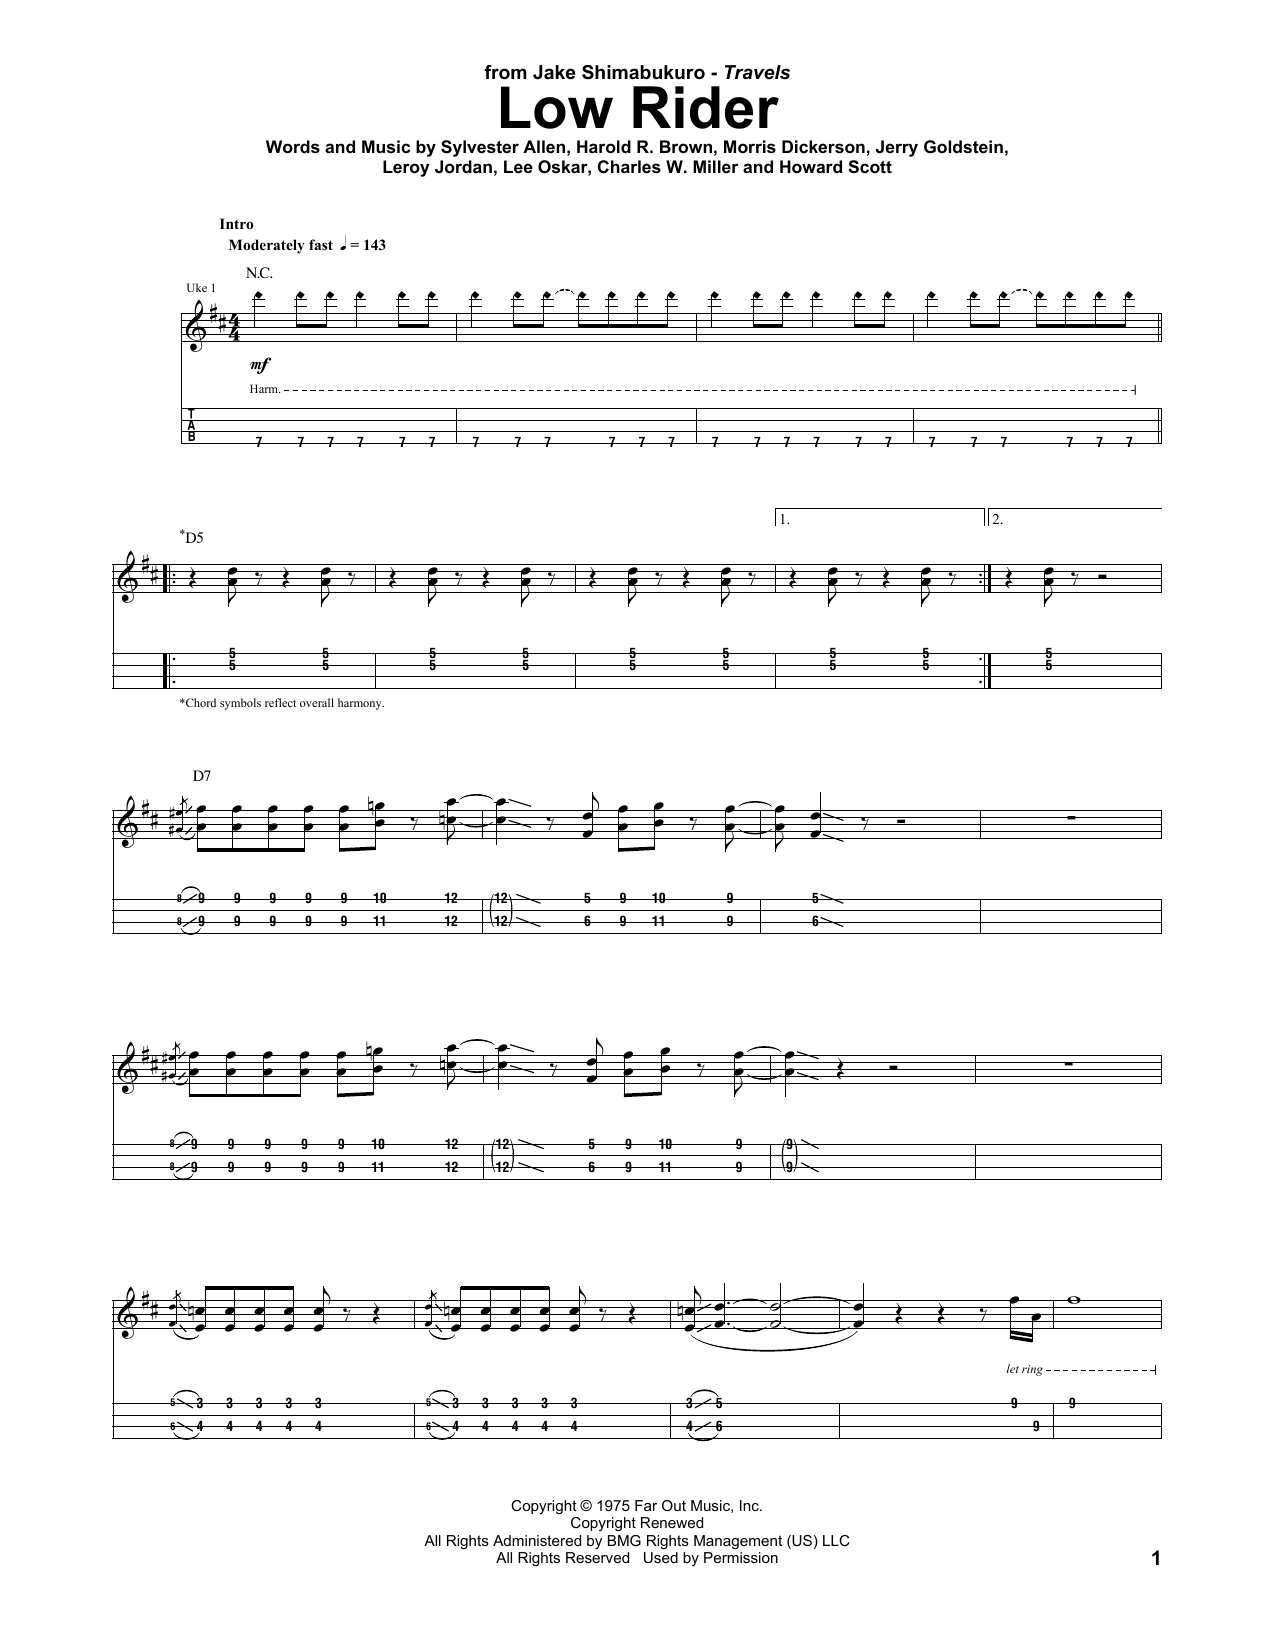 Download Jake Shimabukuro Low Rider Sheet Music and learn how to play UKETAB PDF digital score in minutes